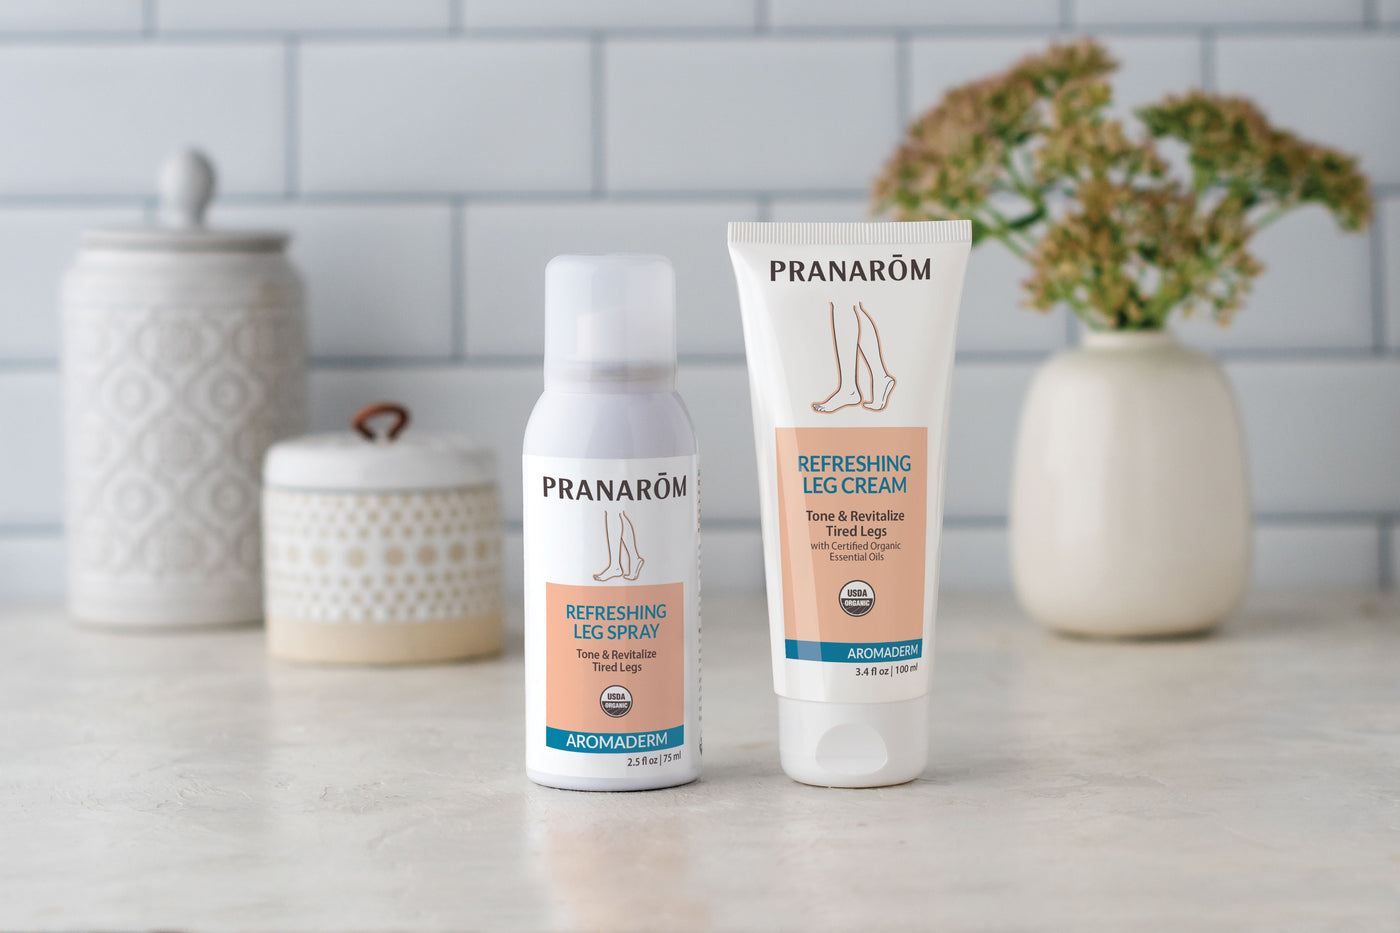 Pranarom: Refreshing Leg Spray